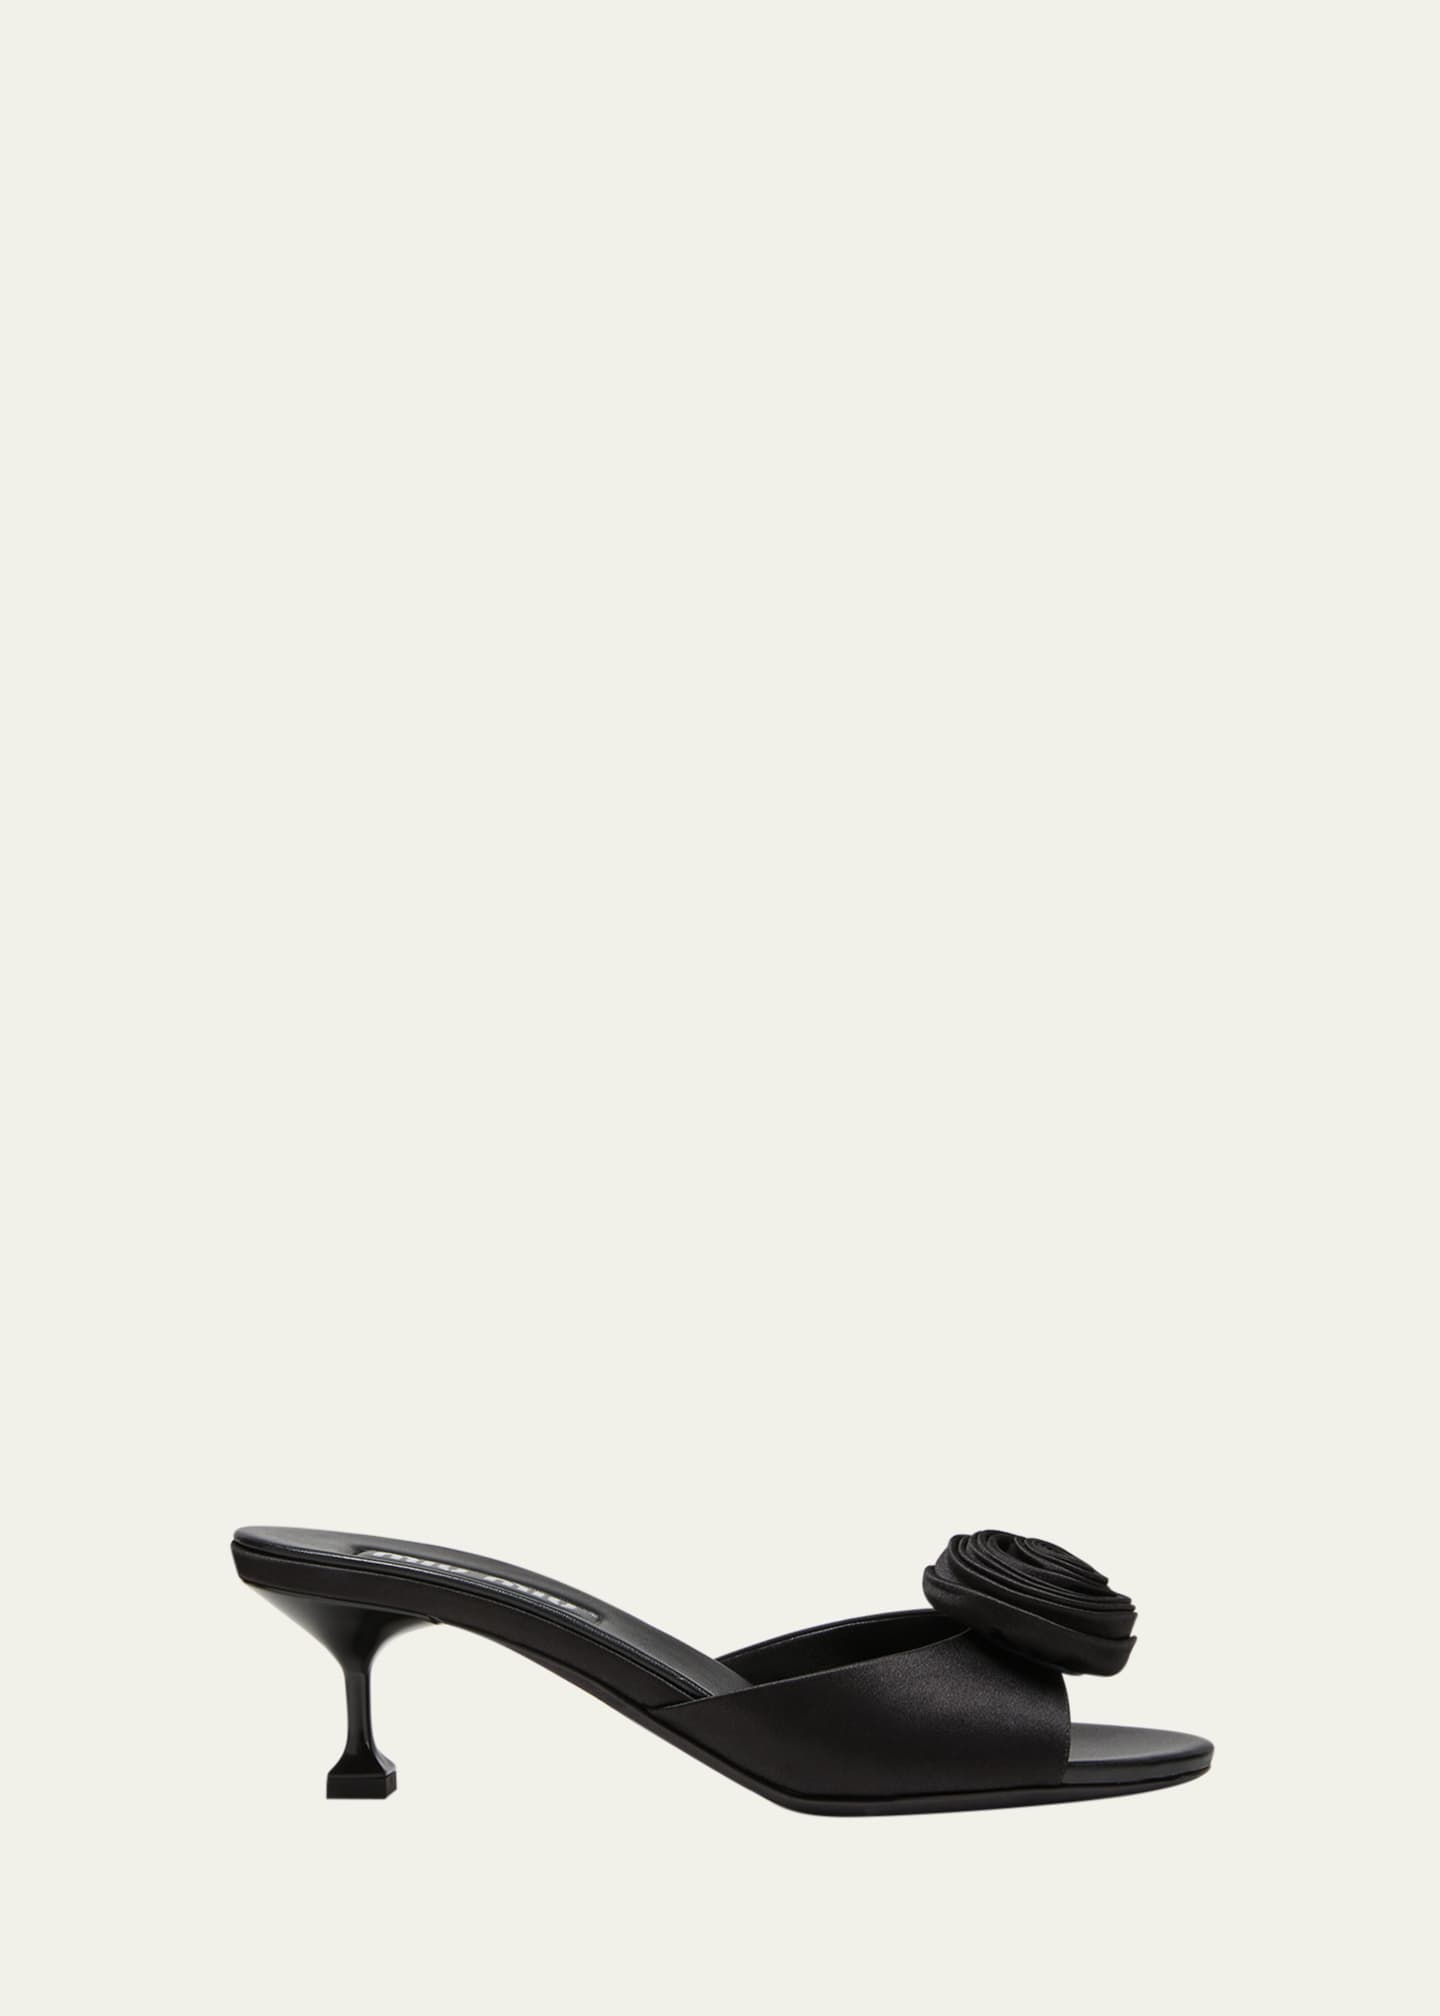 Miu Miu Women's Satin Slides - Black - Flat Sandals - 37